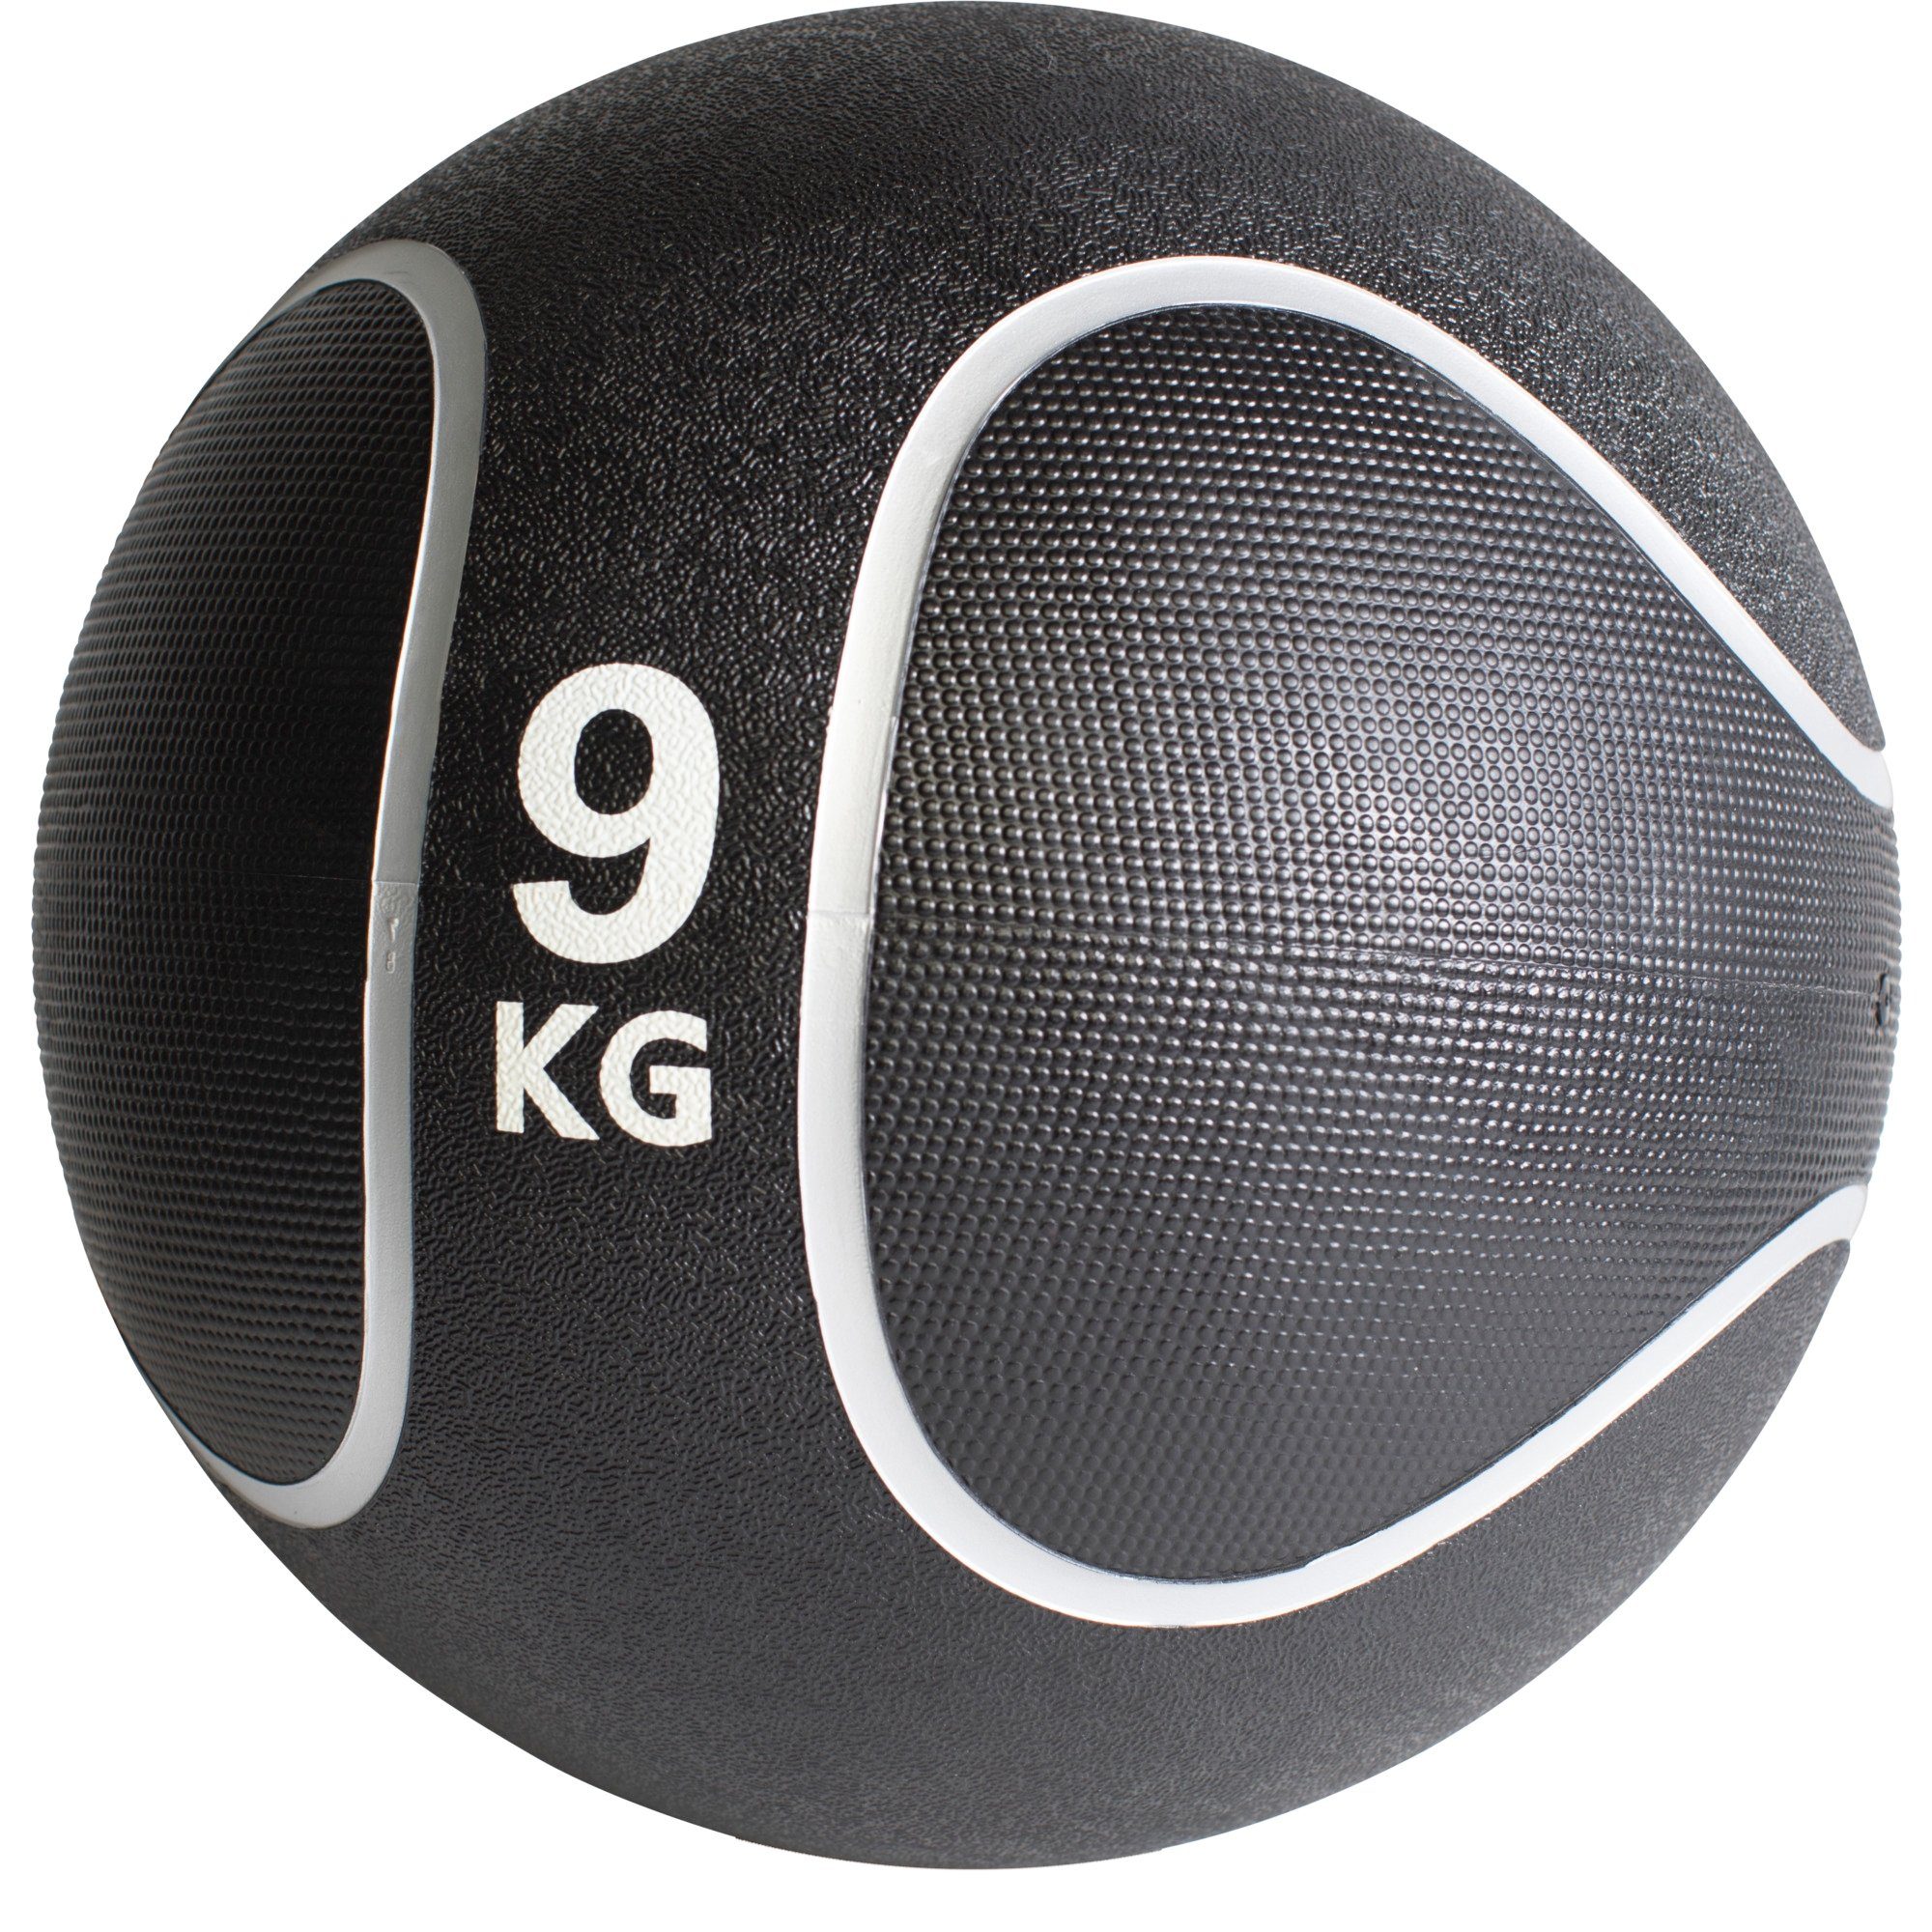 Medizinball KG Set, aus Ø rutschfest, cm, SPORTS 29 GORILLA / oder Gummi, Fitnessball 9 23 Einzeln